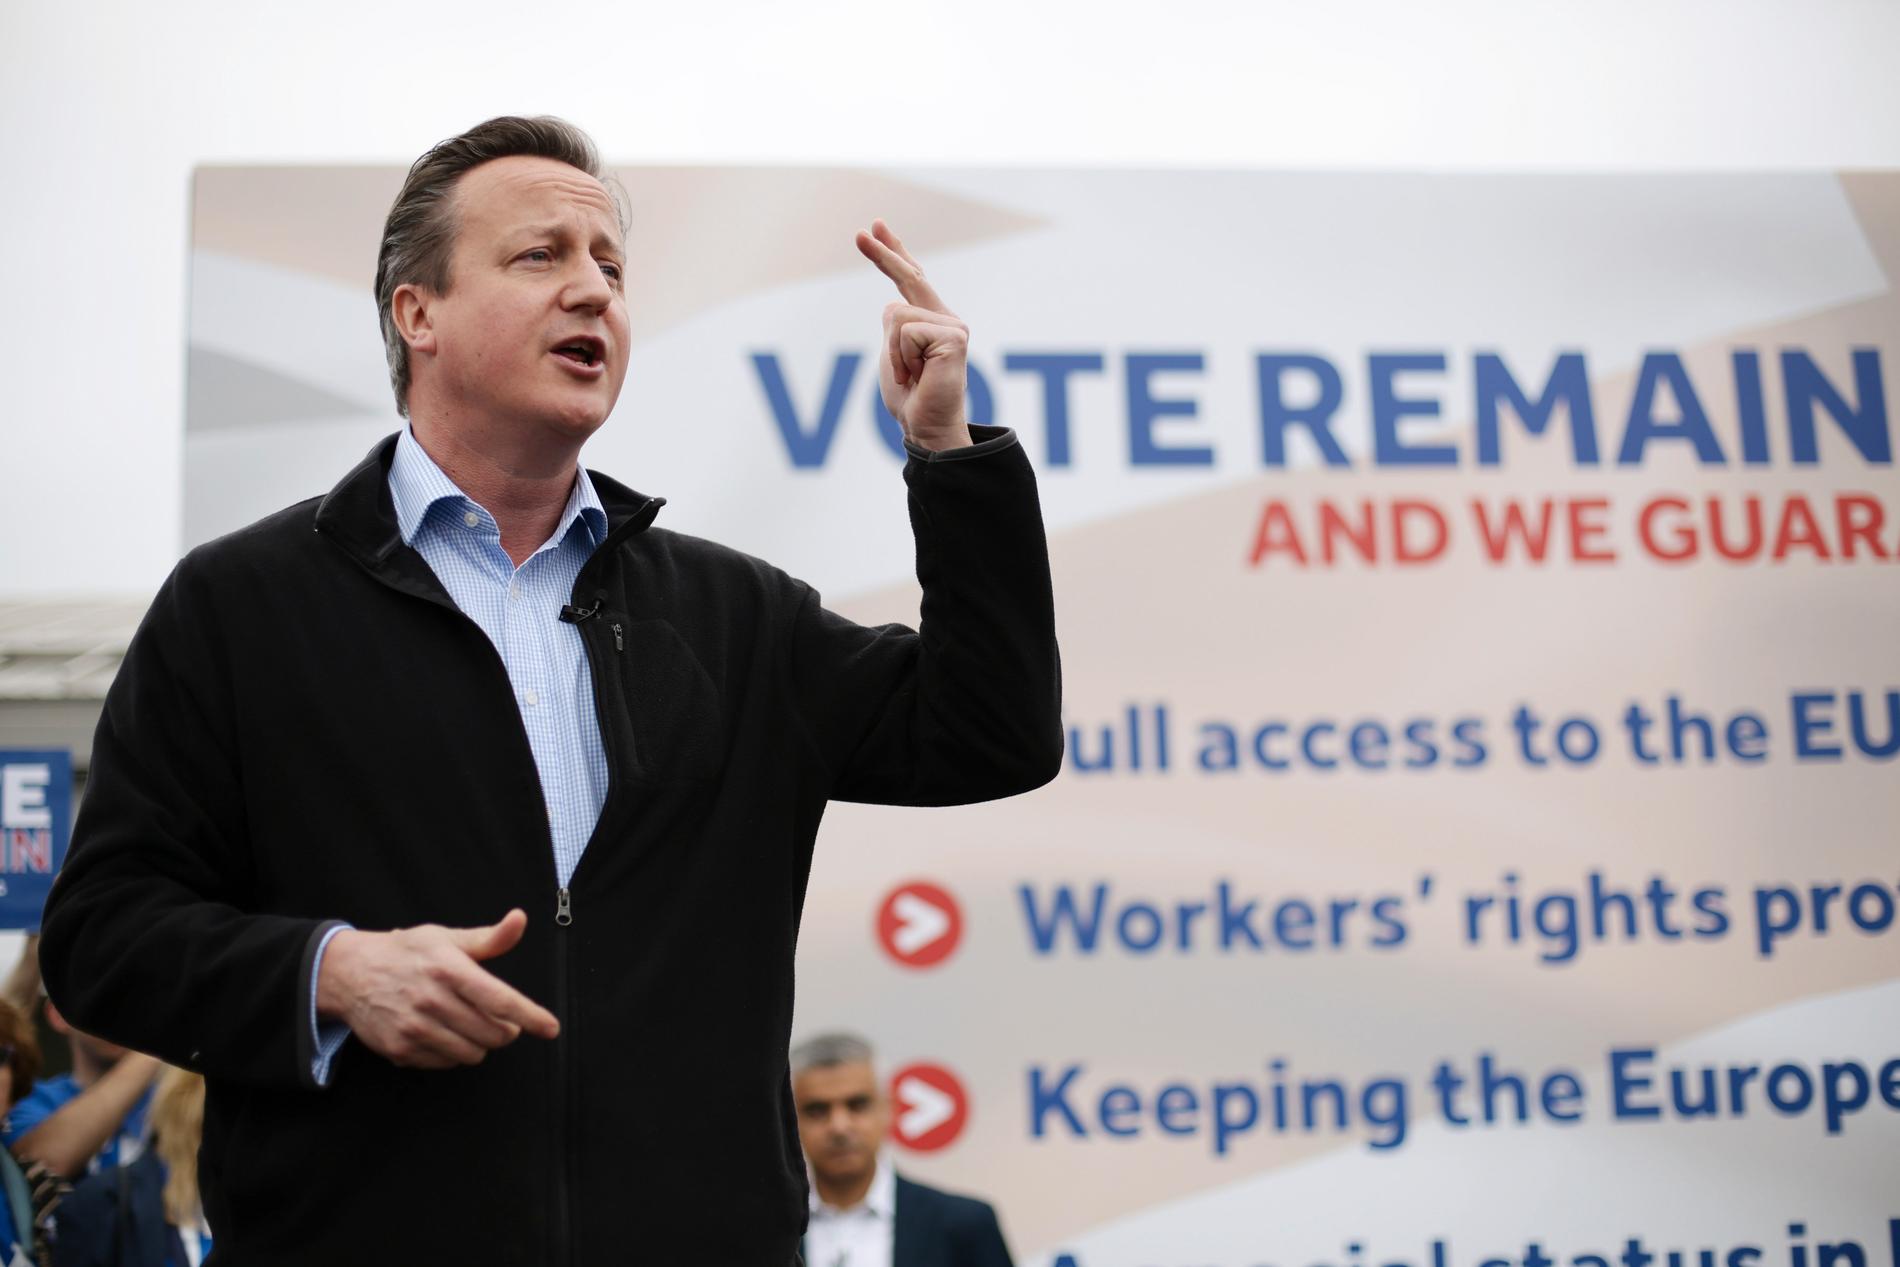 JA-SIDEN: Økonomi har vært gjengangeren for statsminister David Cameron når han skal forsvare britenes EU-medlemskap.